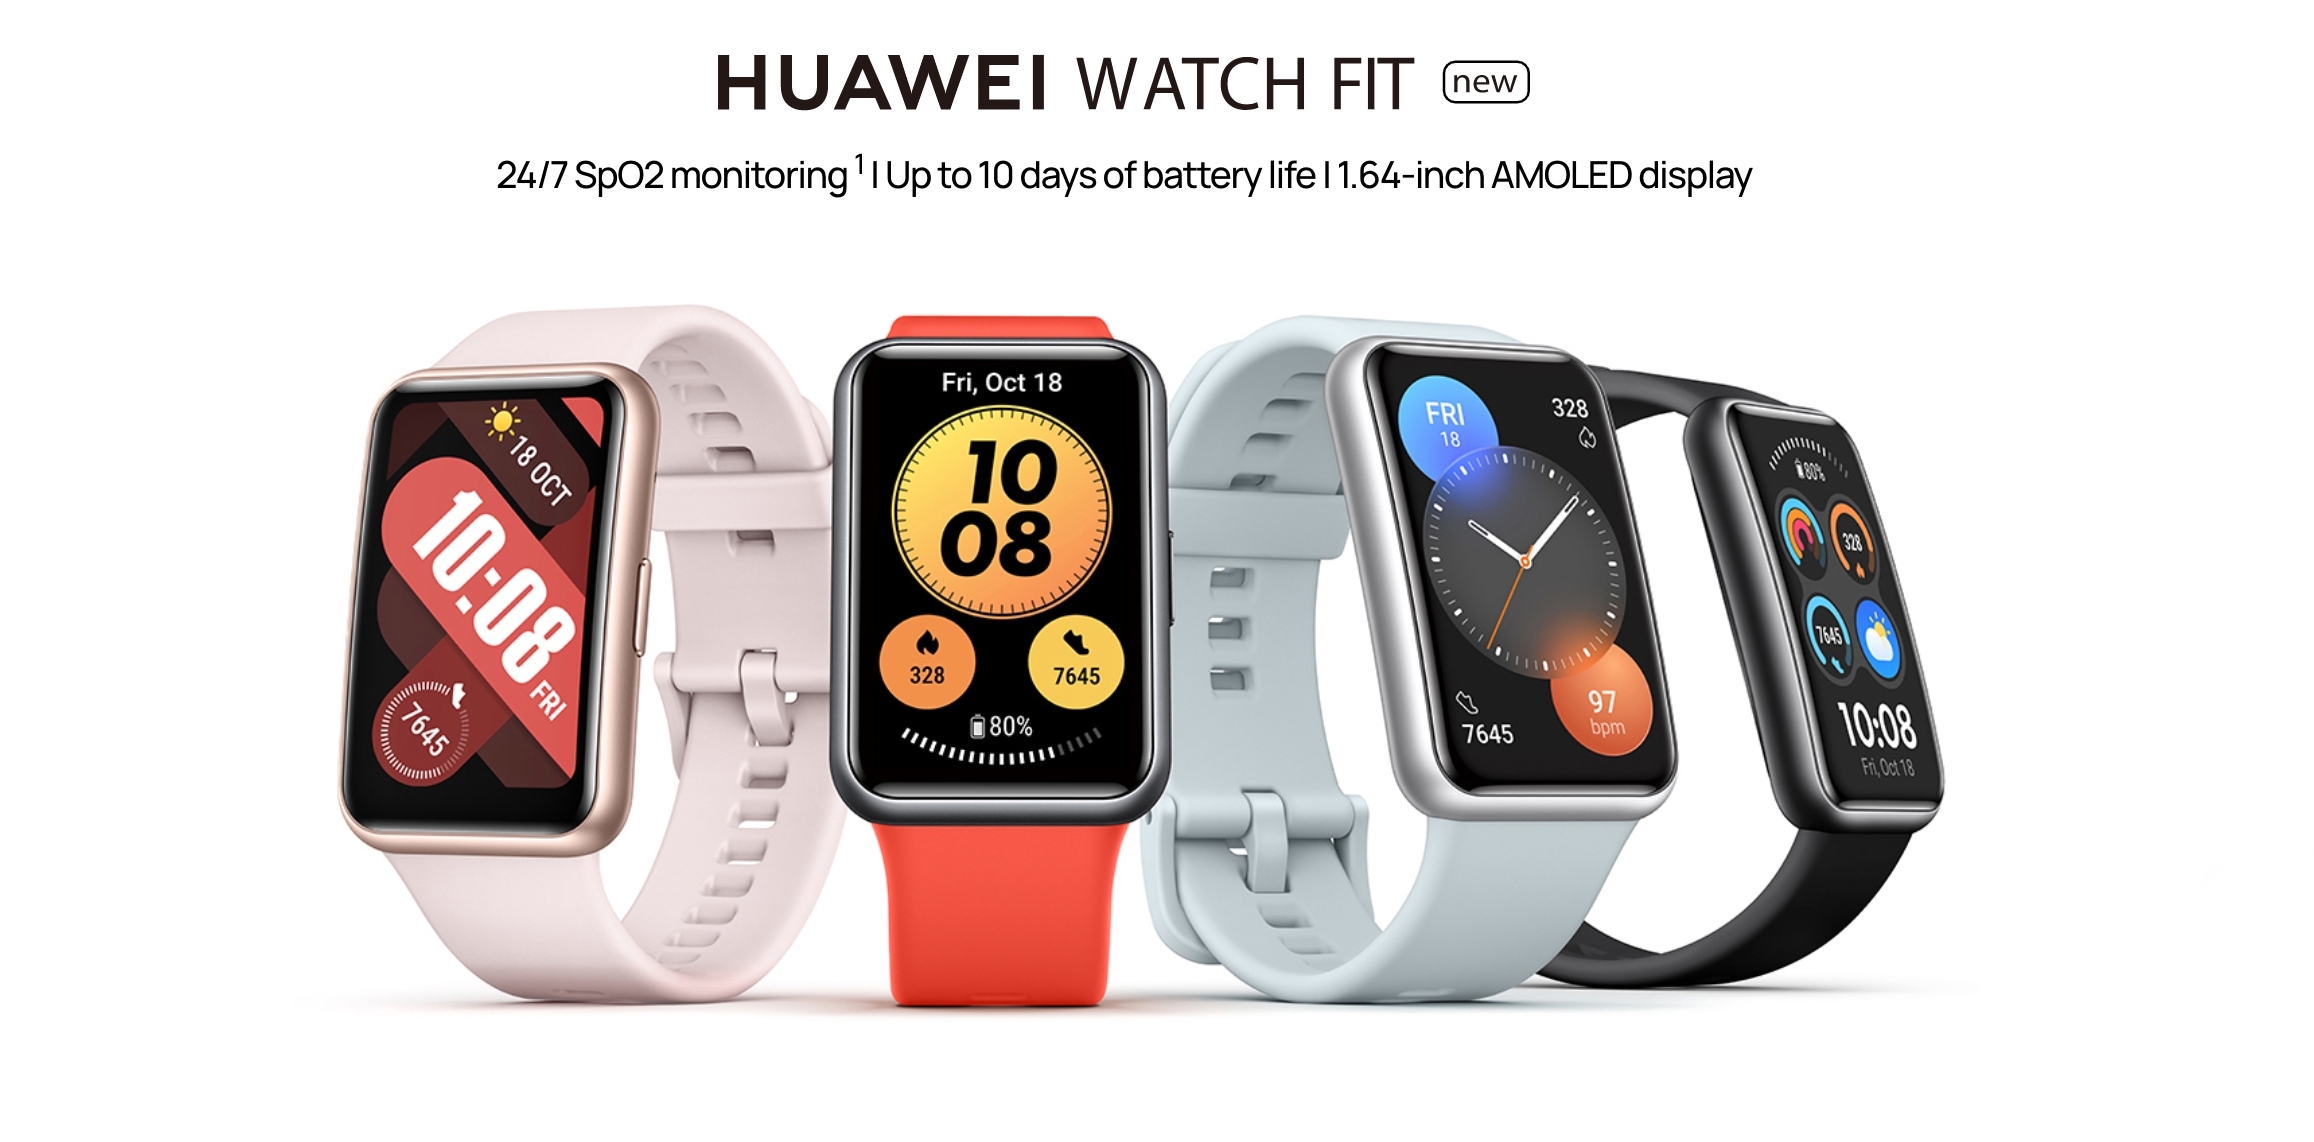 Huawei Watch Fit neu mit AMOLED-Bildschirm, NFC und SpO2-Sensor kommt nach Europa